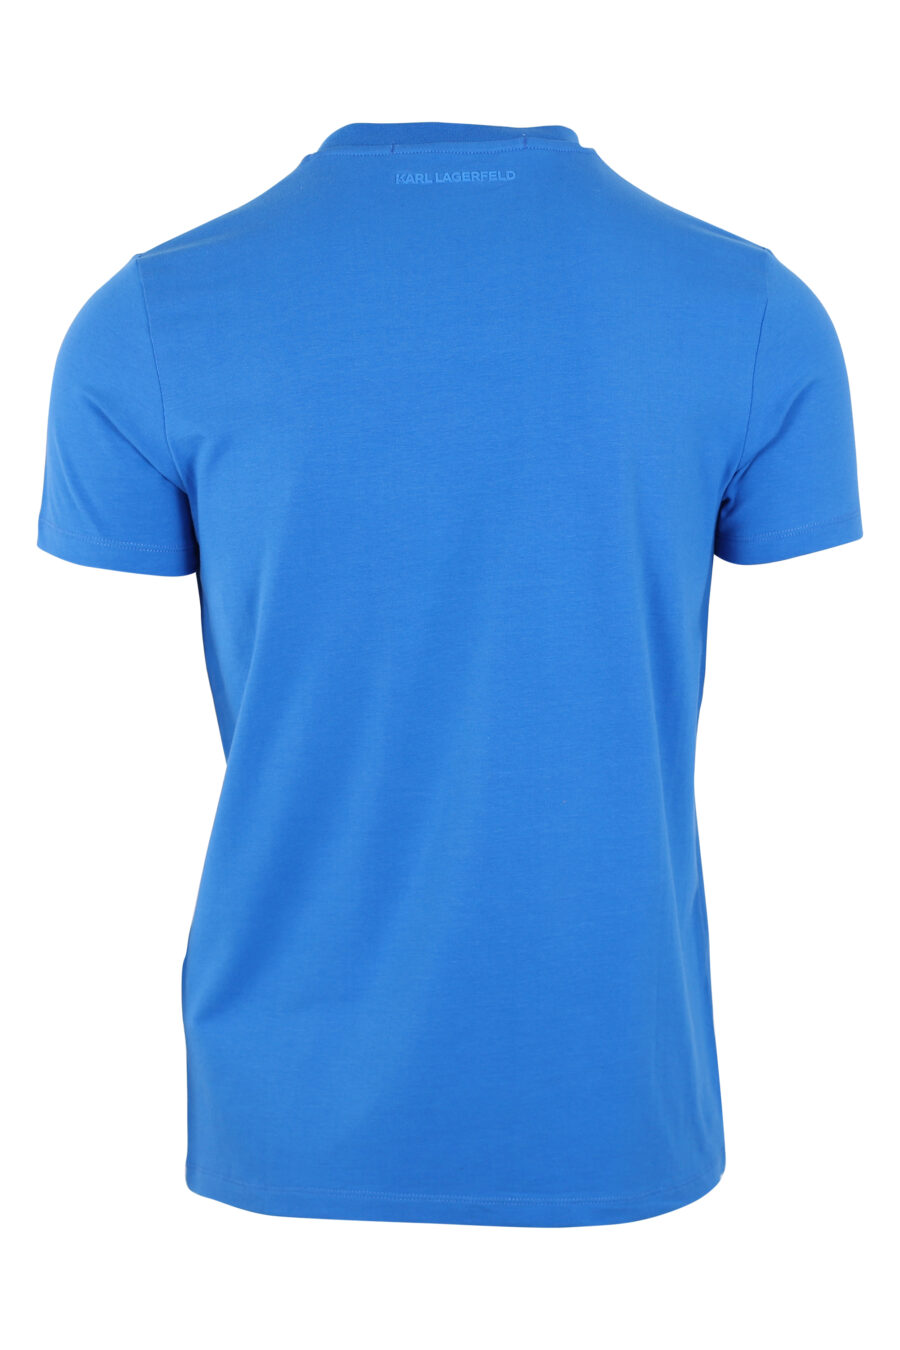 Camiseta azul con maxilogo "karl" en contraste negro - IMG 9448